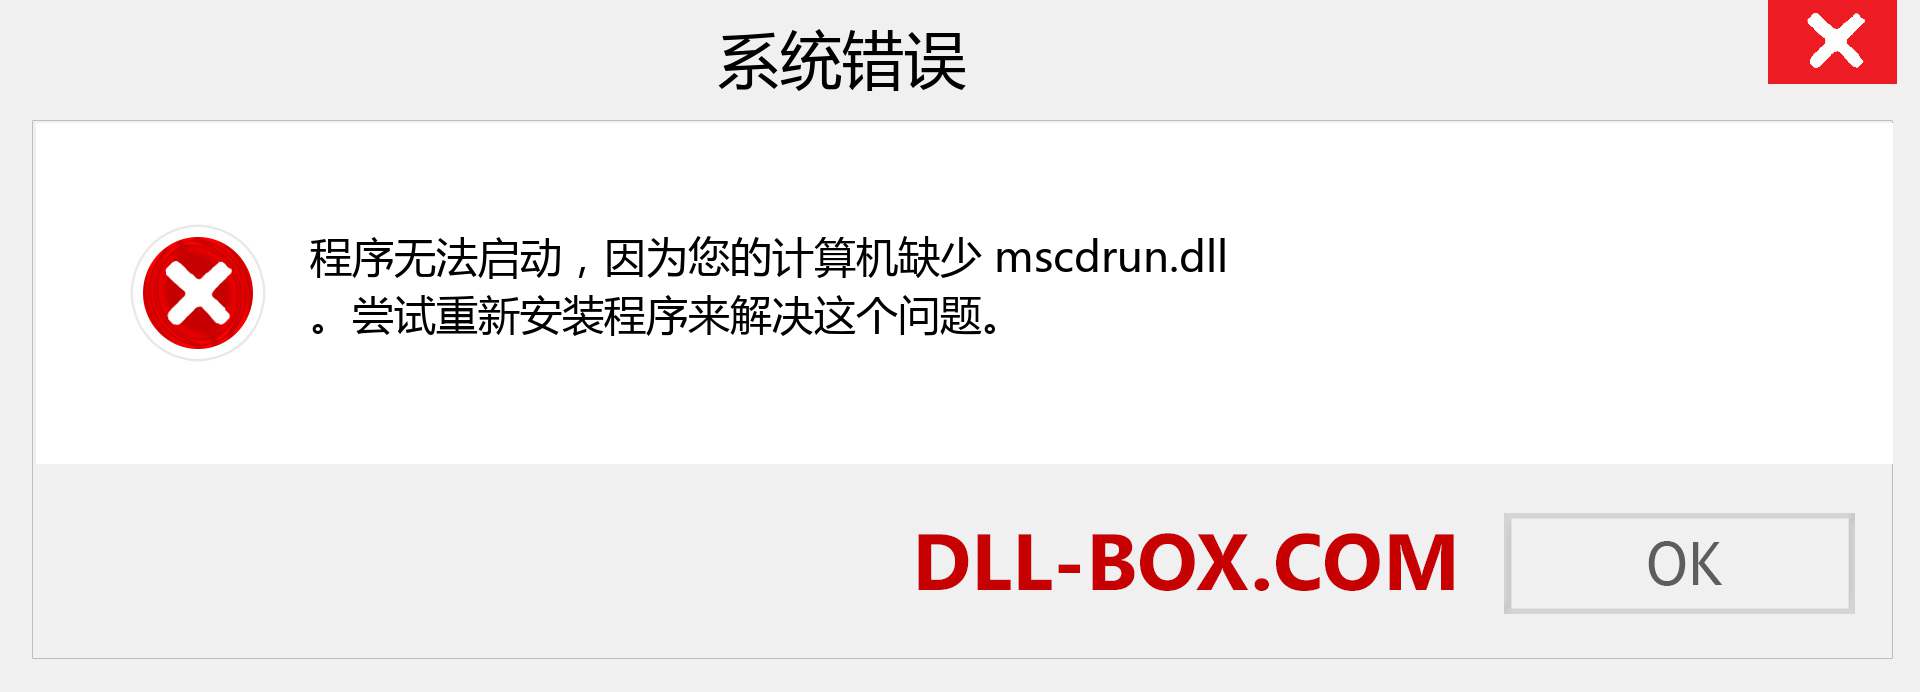 mscdrun.dll 文件丢失？。 适用于 Windows 7、8、10 的下载 - 修复 Windows、照片、图像上的 mscdrun dll 丢失错误